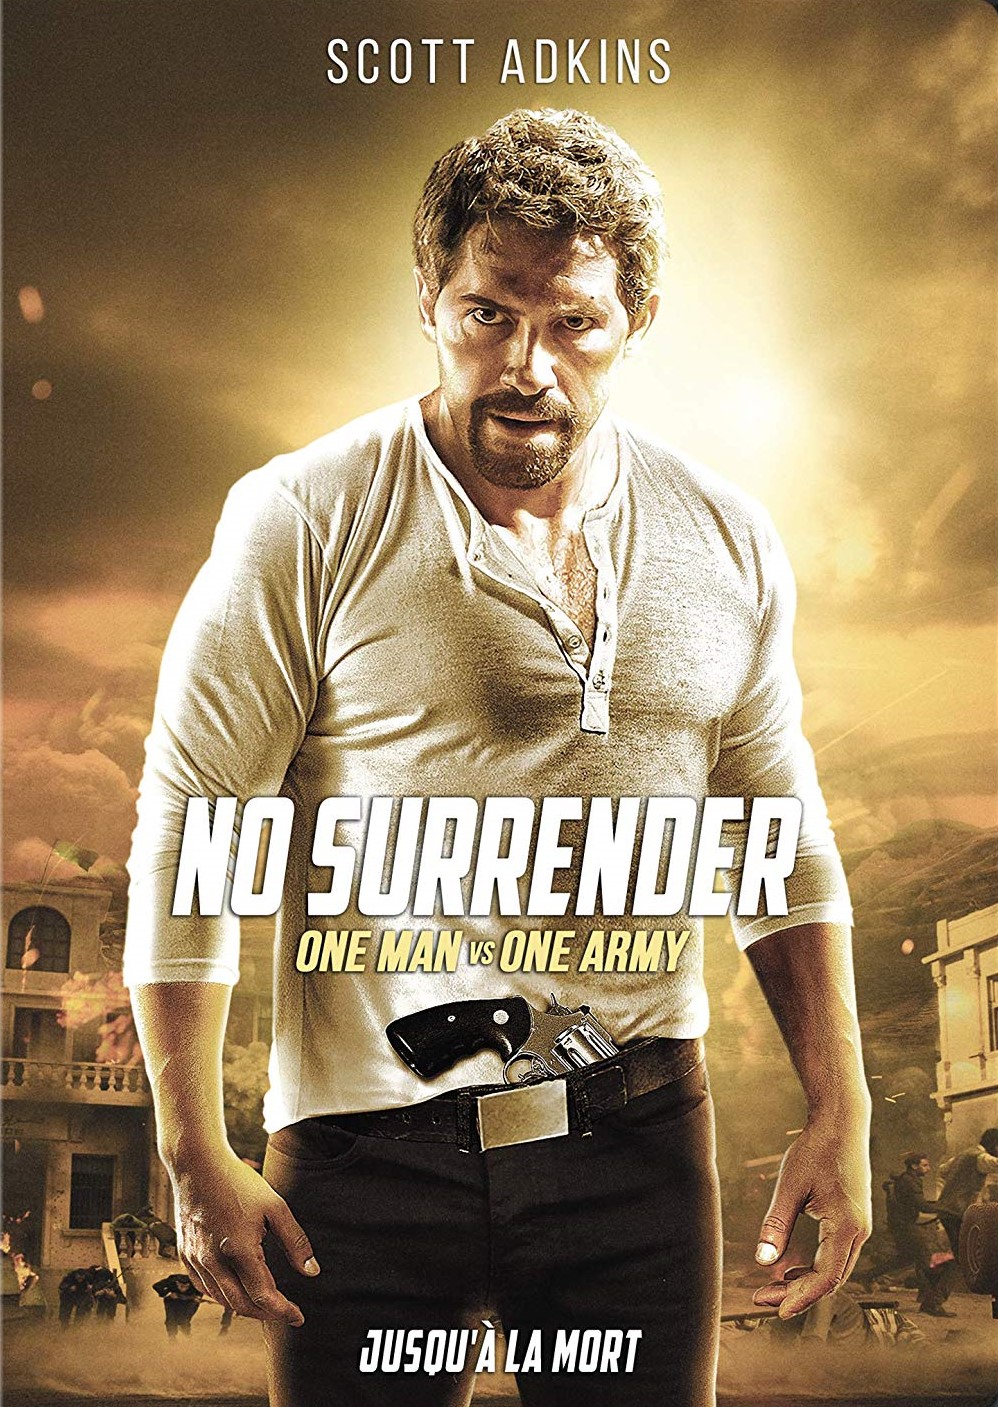 Nonton film No Surrender layarkaca21 indoxx1 ganool online streaming terbaru